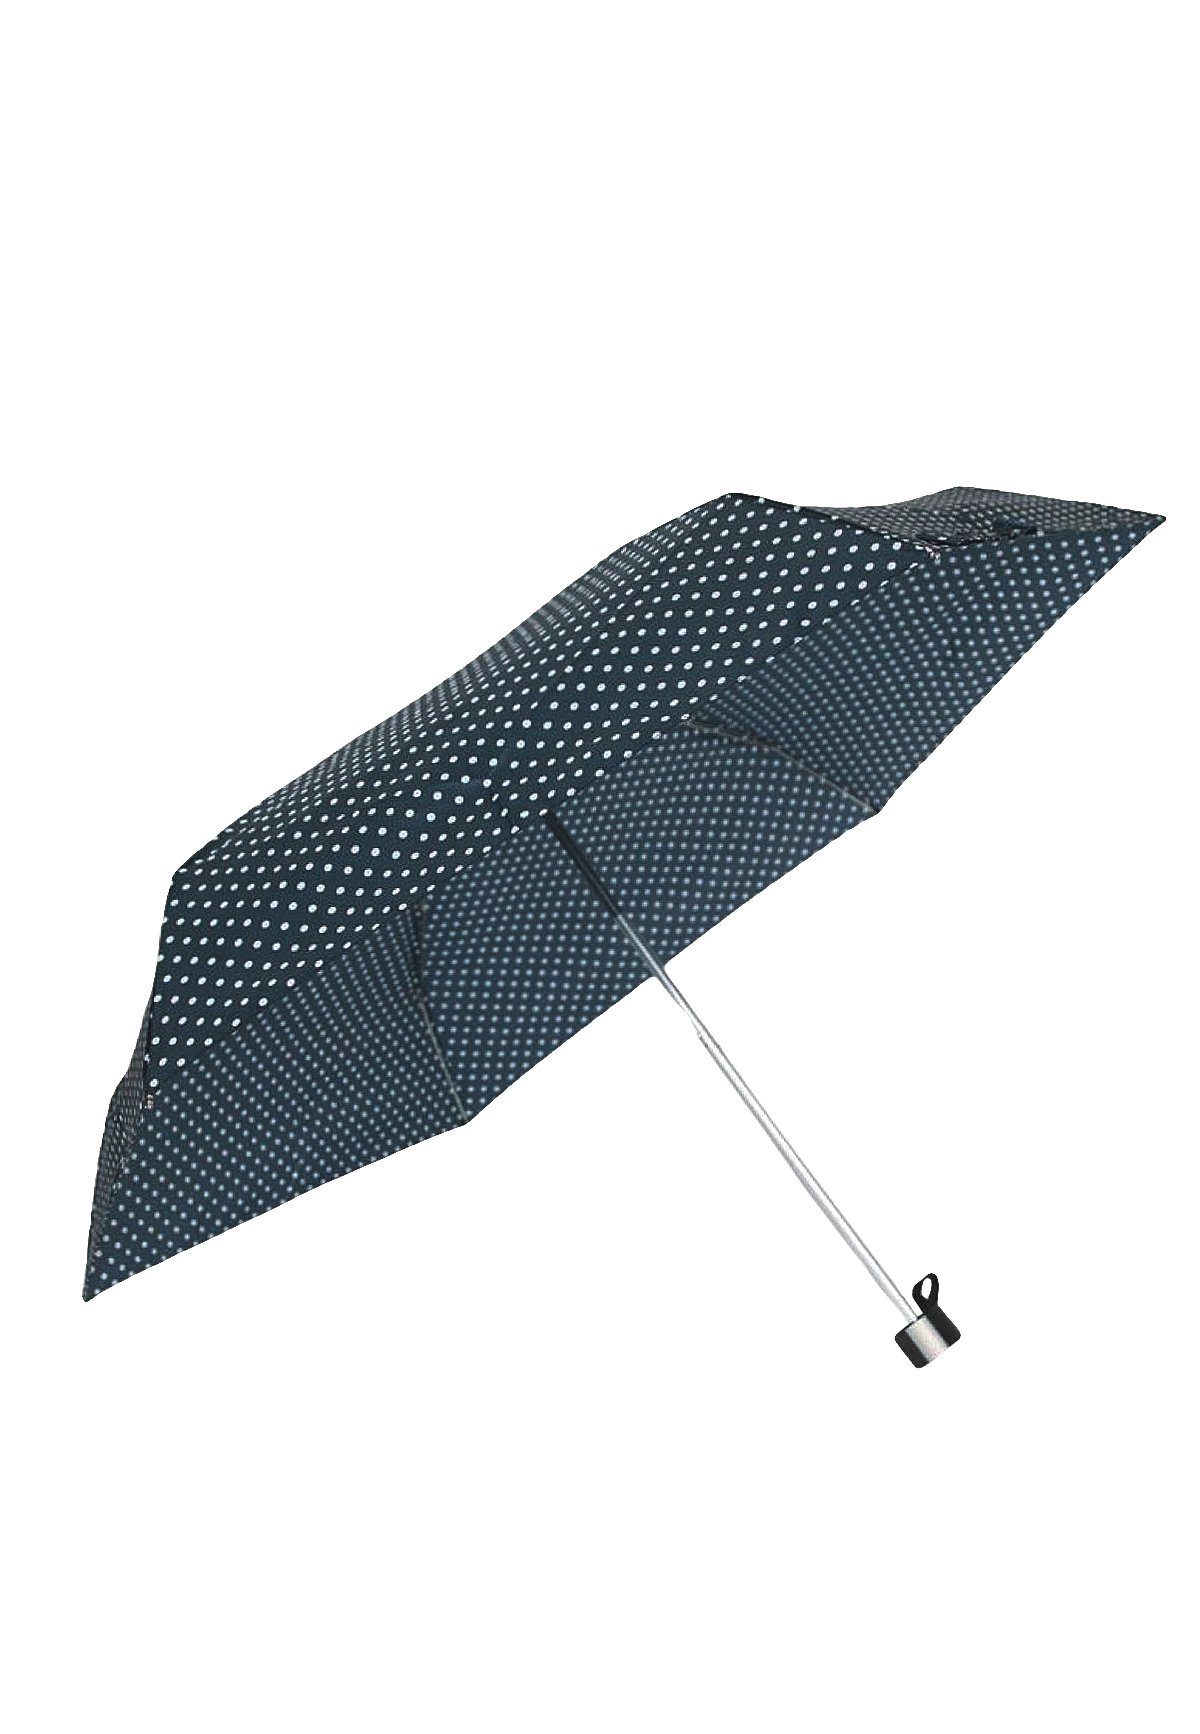 Mini Regenschirm Ausführung Navy 4684 in Taschenregenschirm Gepunktet, Taschen ANELY Kleiner